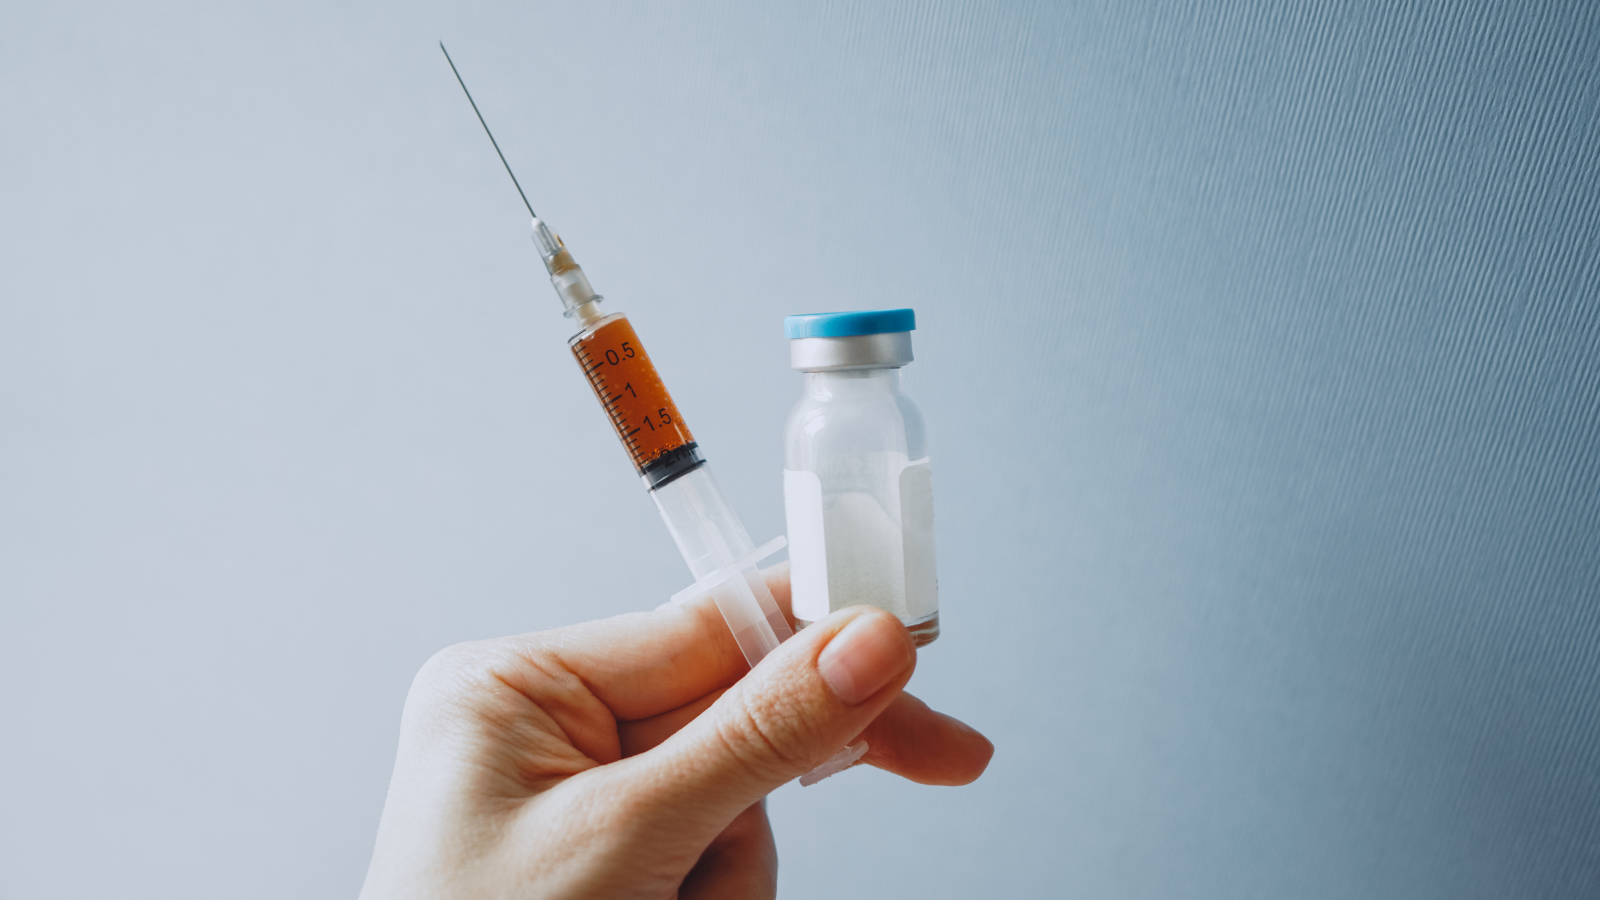 Sentra Vaksinasi Kini Hadir di Kota Semarang